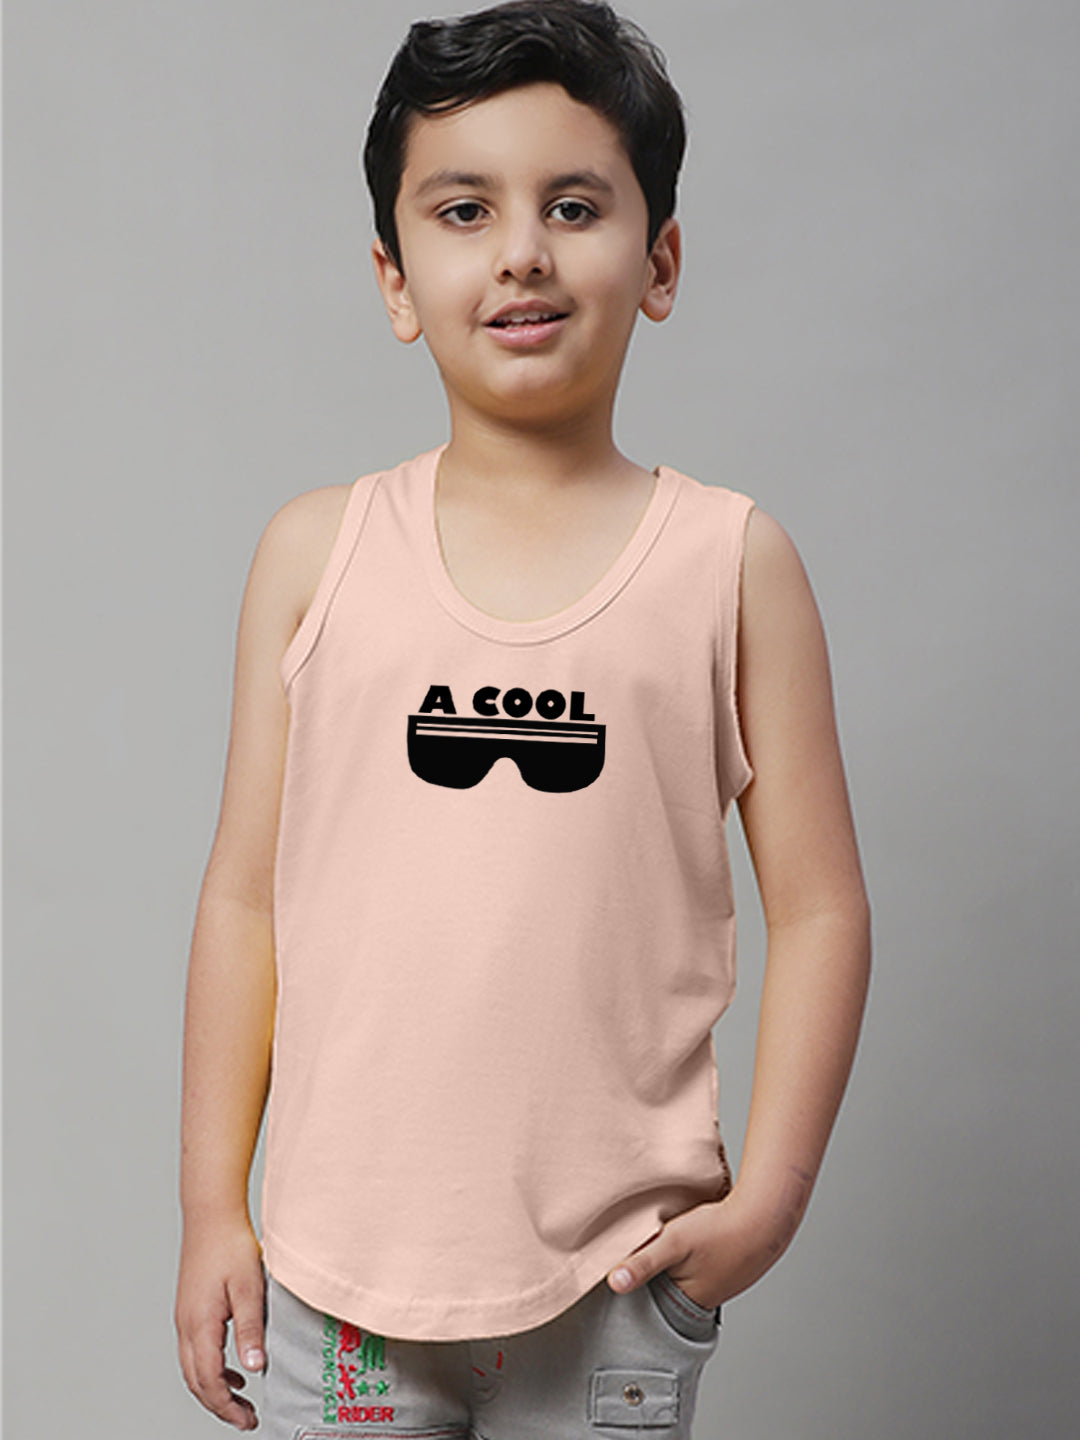 Boys Cool Printed Regular Fit Vest - Friskers